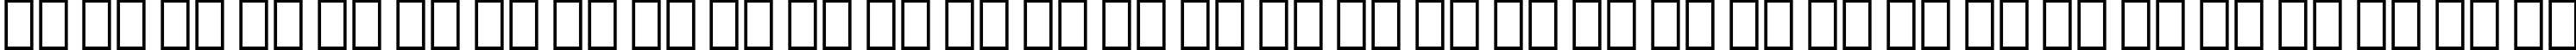 Пример написания русского алфавита шрифтом Swiss 911 Ultra Compressed BT